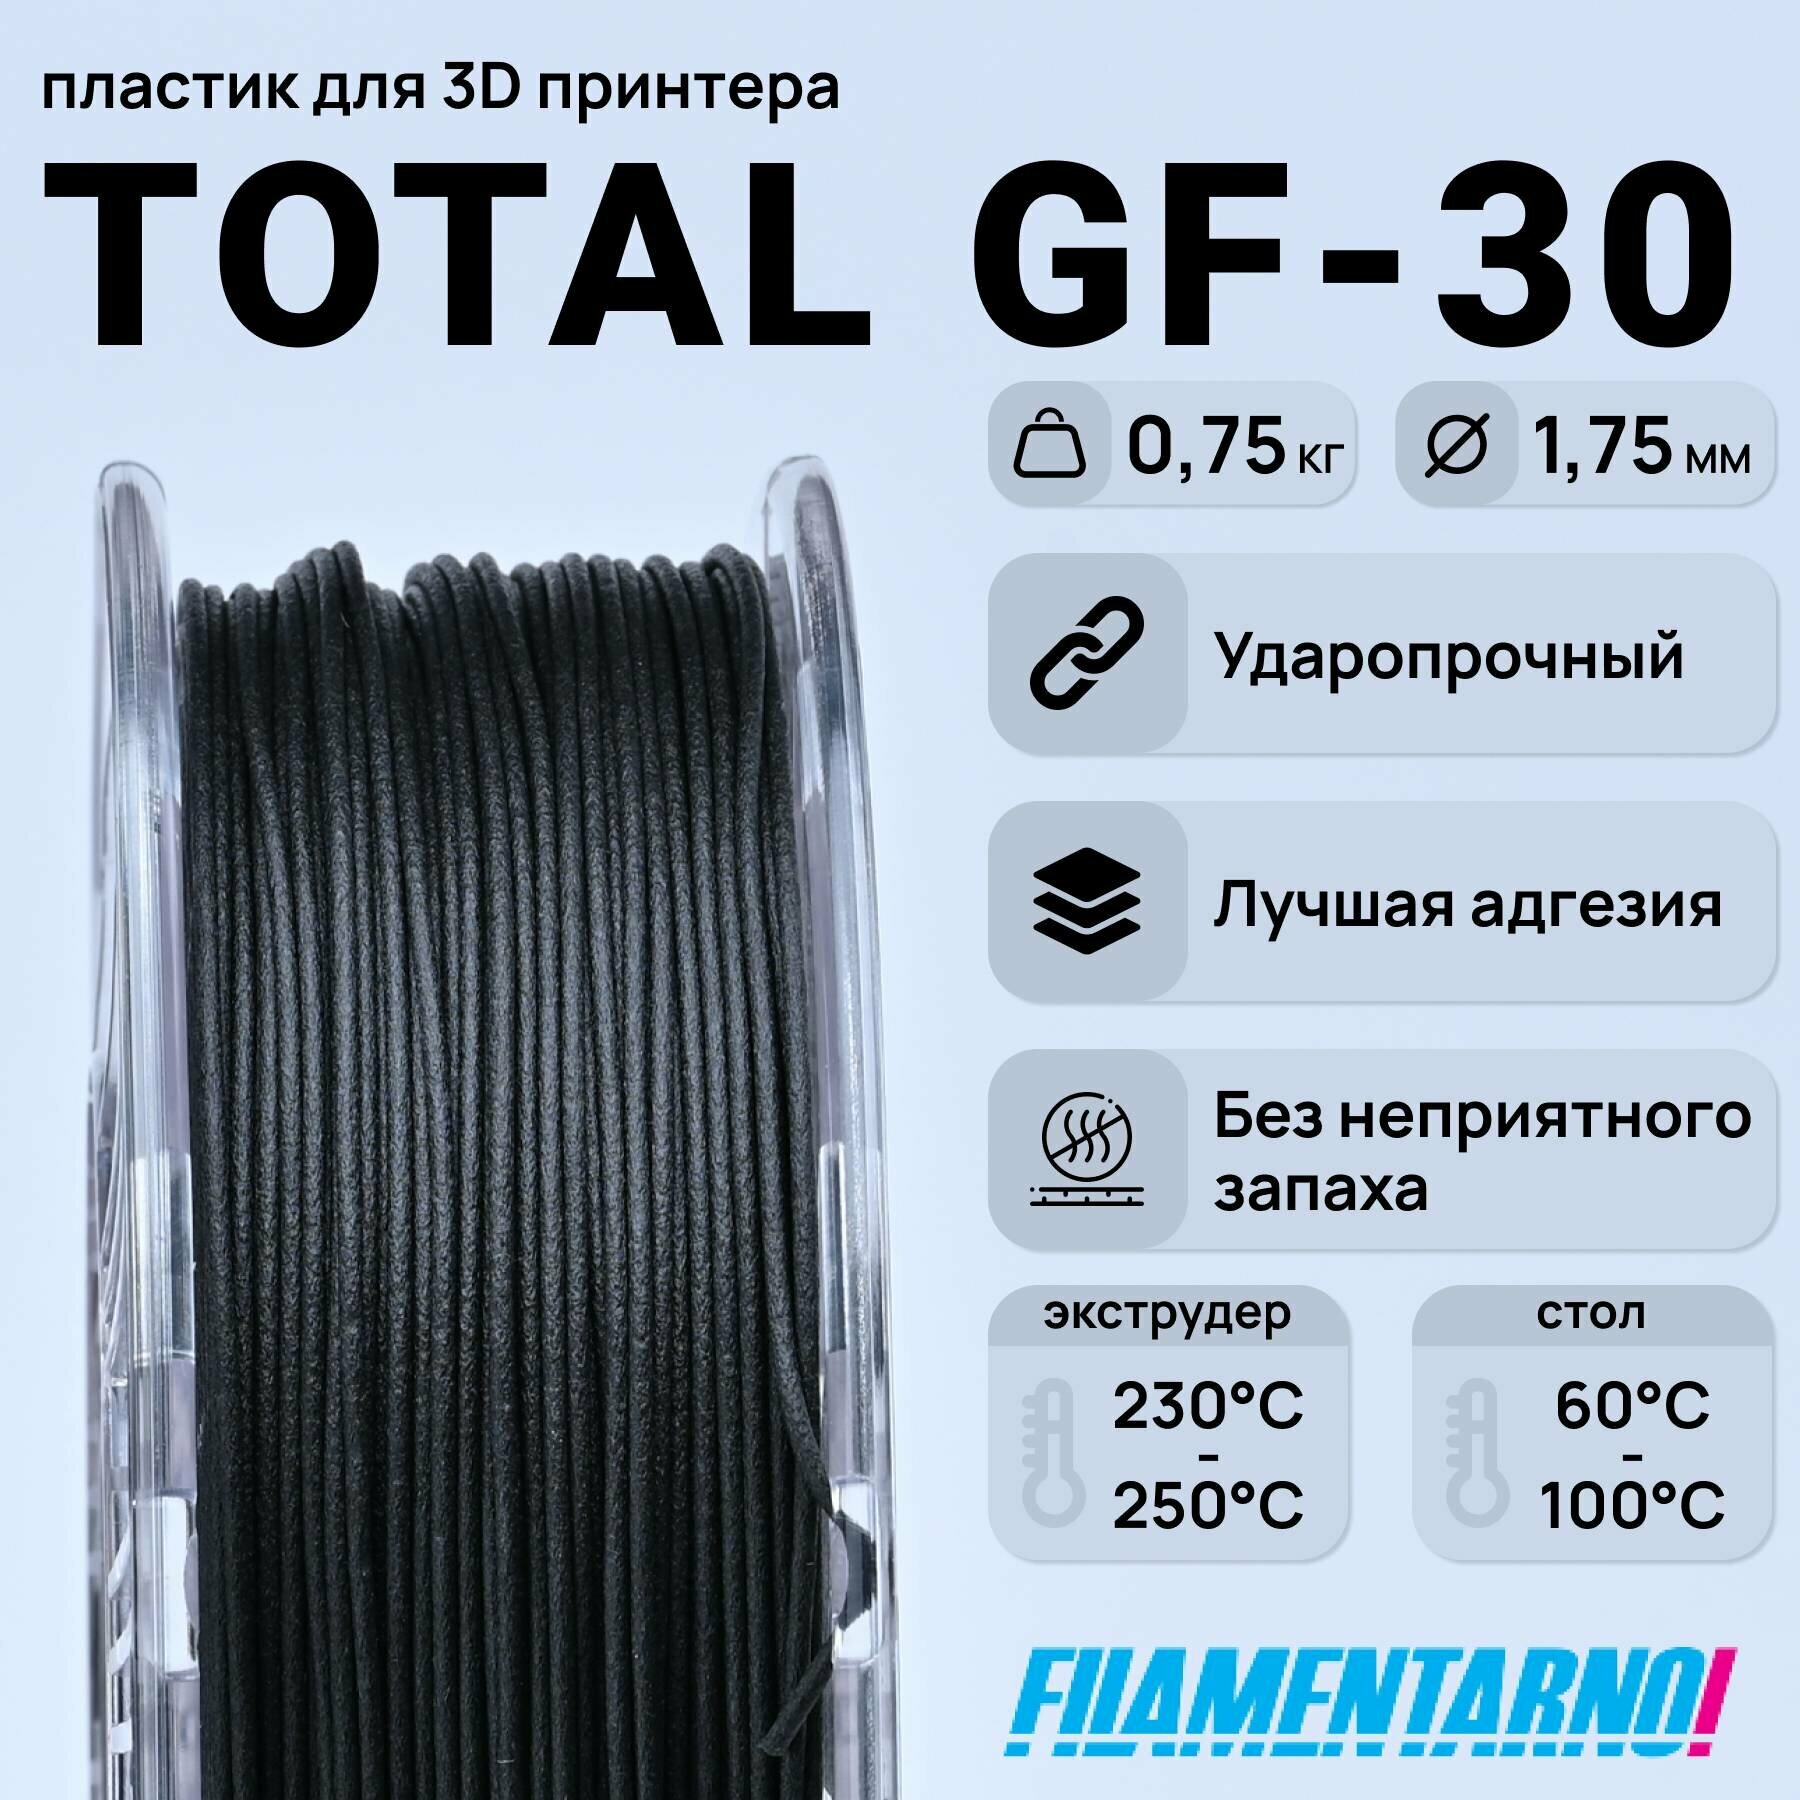 TPU Total Pro GF-30 черный 750 г, 1,75 мм, пластик Filamentarno для 3D-принтера